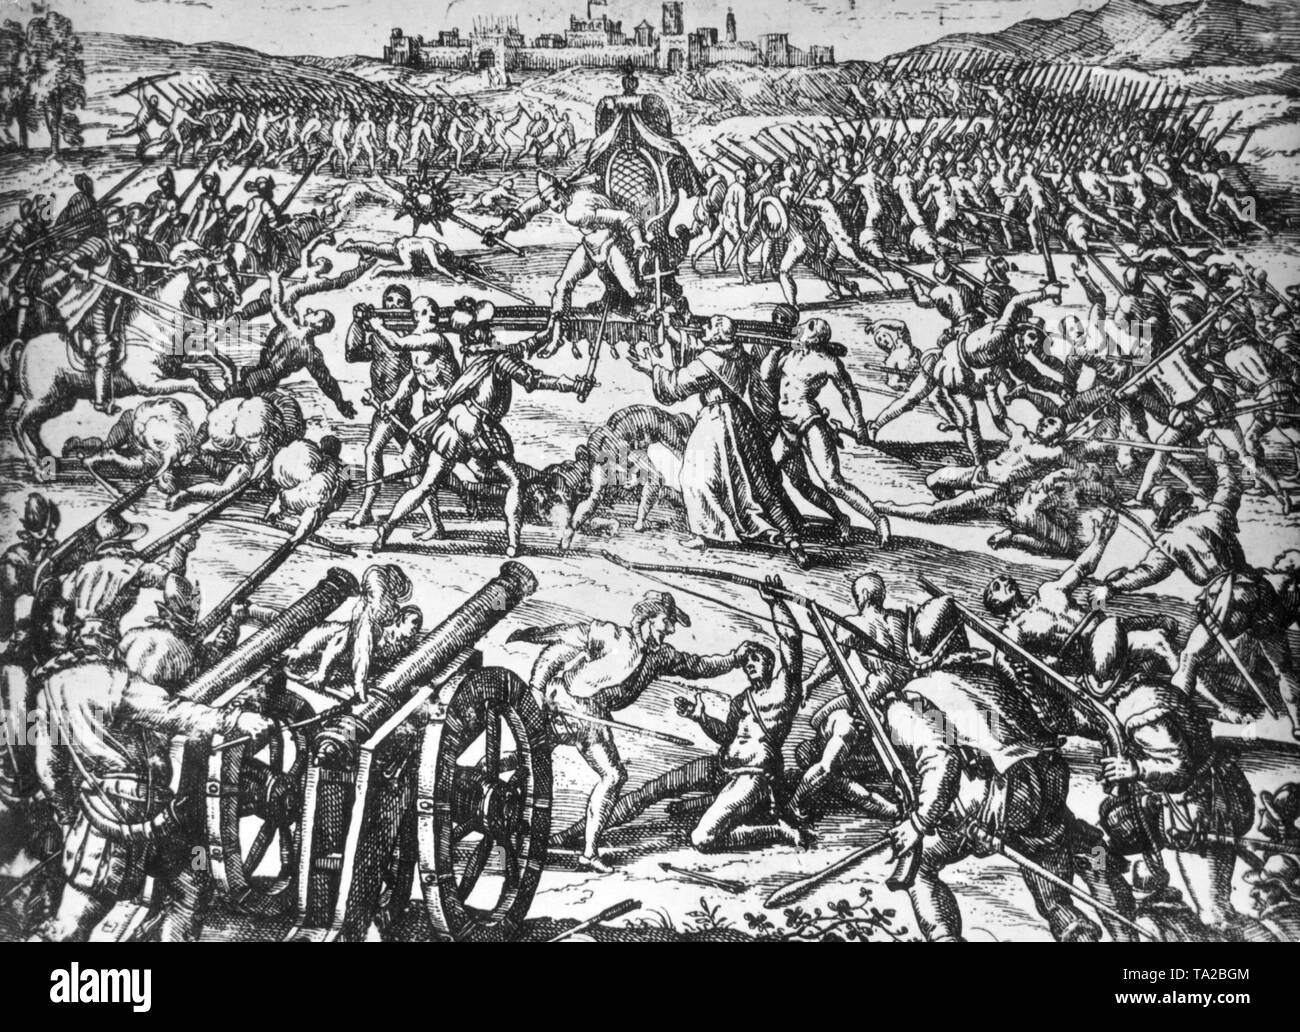 Il libro contemporaneo illustrazione mostra la cattura del sovrano Inca Atahualpa da il conquistador spagnolo Pizarro. Durante la quasi perso la battaglia Pizarro assalto con pochi uomini le truppe consolidato dell'Inca, ribaltato la lettiera del re e catturato Atahualpa. Foto Stock